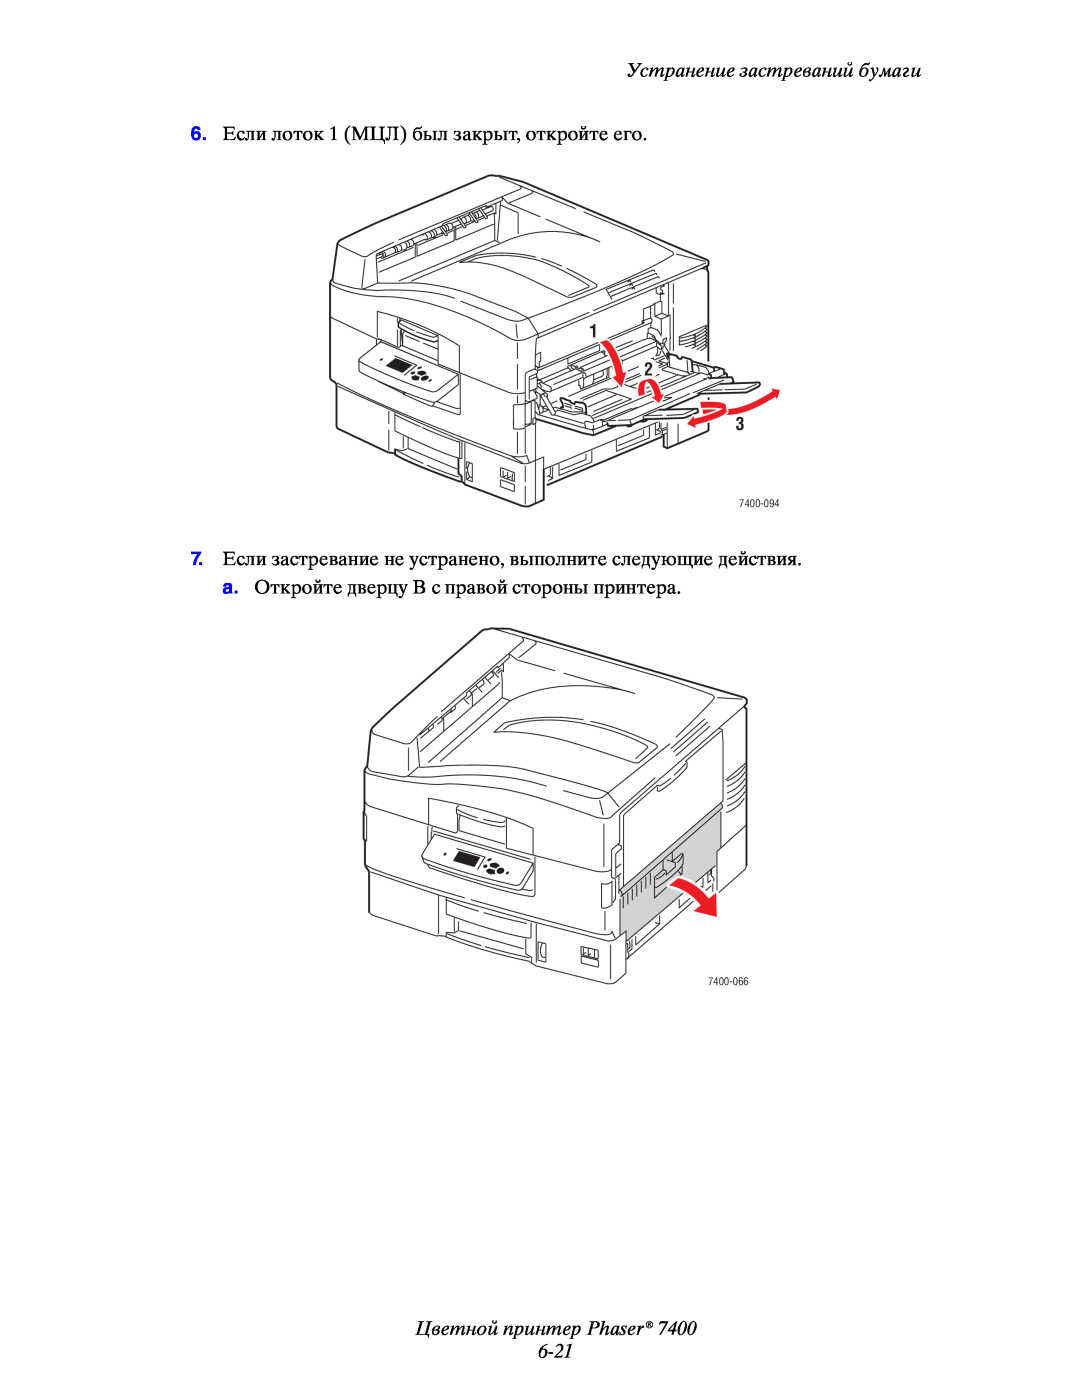 Xerox manual Цветной принтер Phaser 6-21, Устранение застреваний бумаги, 1 2 3, 7400-094, 7400-066 